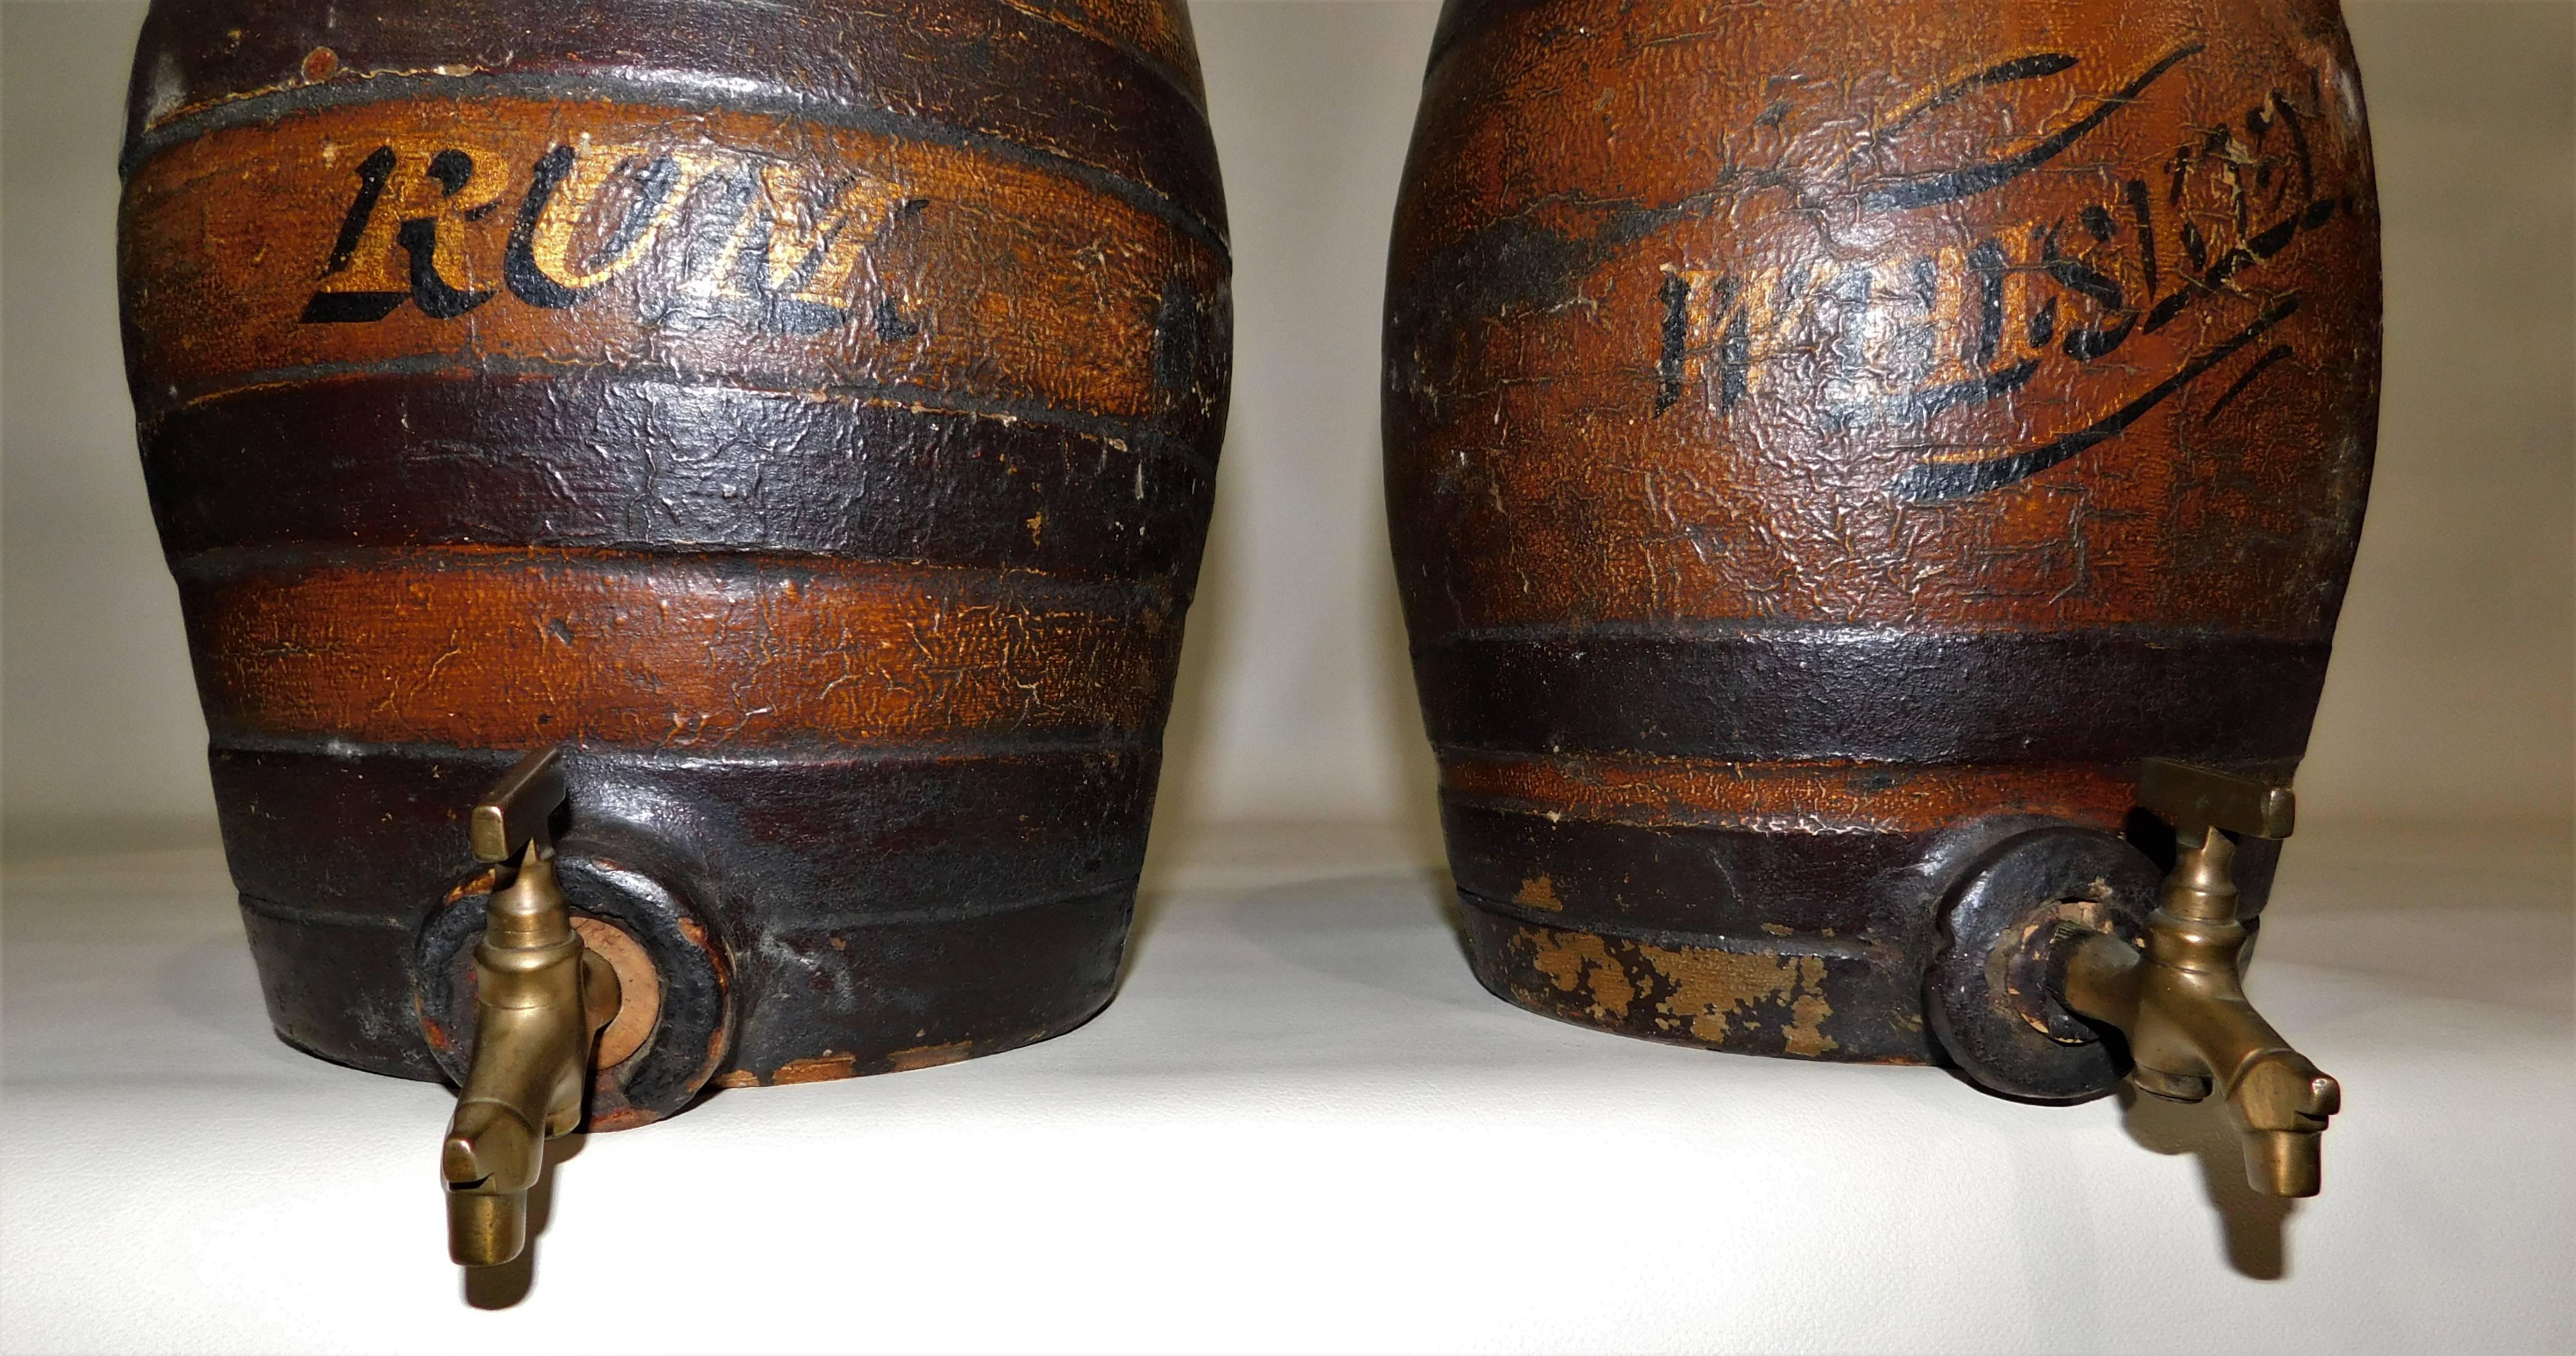 Grand baril de whisky et de rhum en poterie grès antique du 19e siècle, distributeurs de liqueurs de bar avec robinets en laiton. Les becs en laiton font 2 pouces de long, le tonneau de rhum fait 10 pouces de haut, le tonneau de whisky fait 10,5